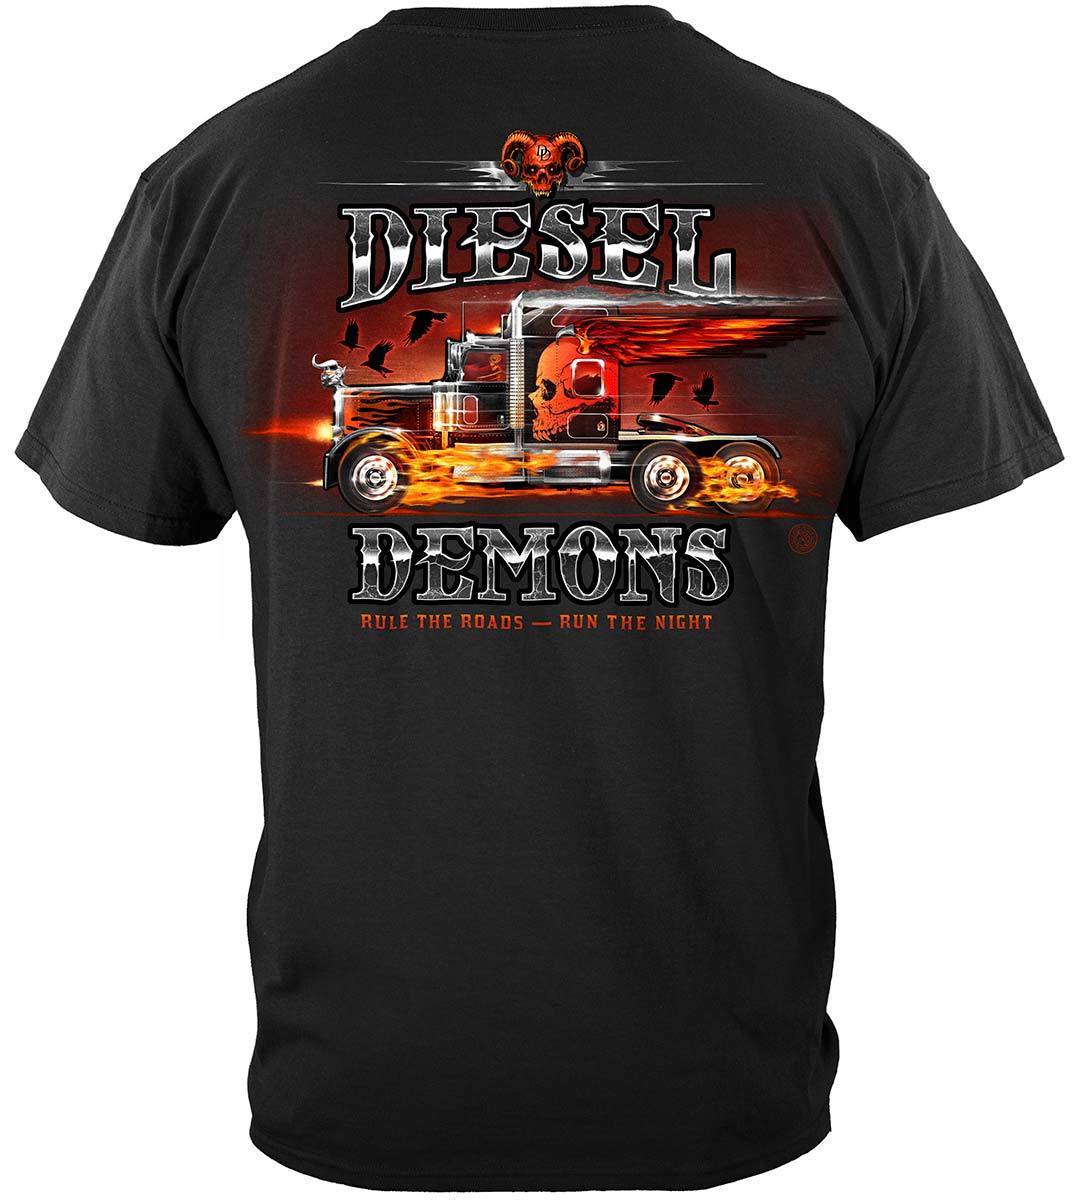 Trucker CTTB Diesel Demon Premium Long Sleeves